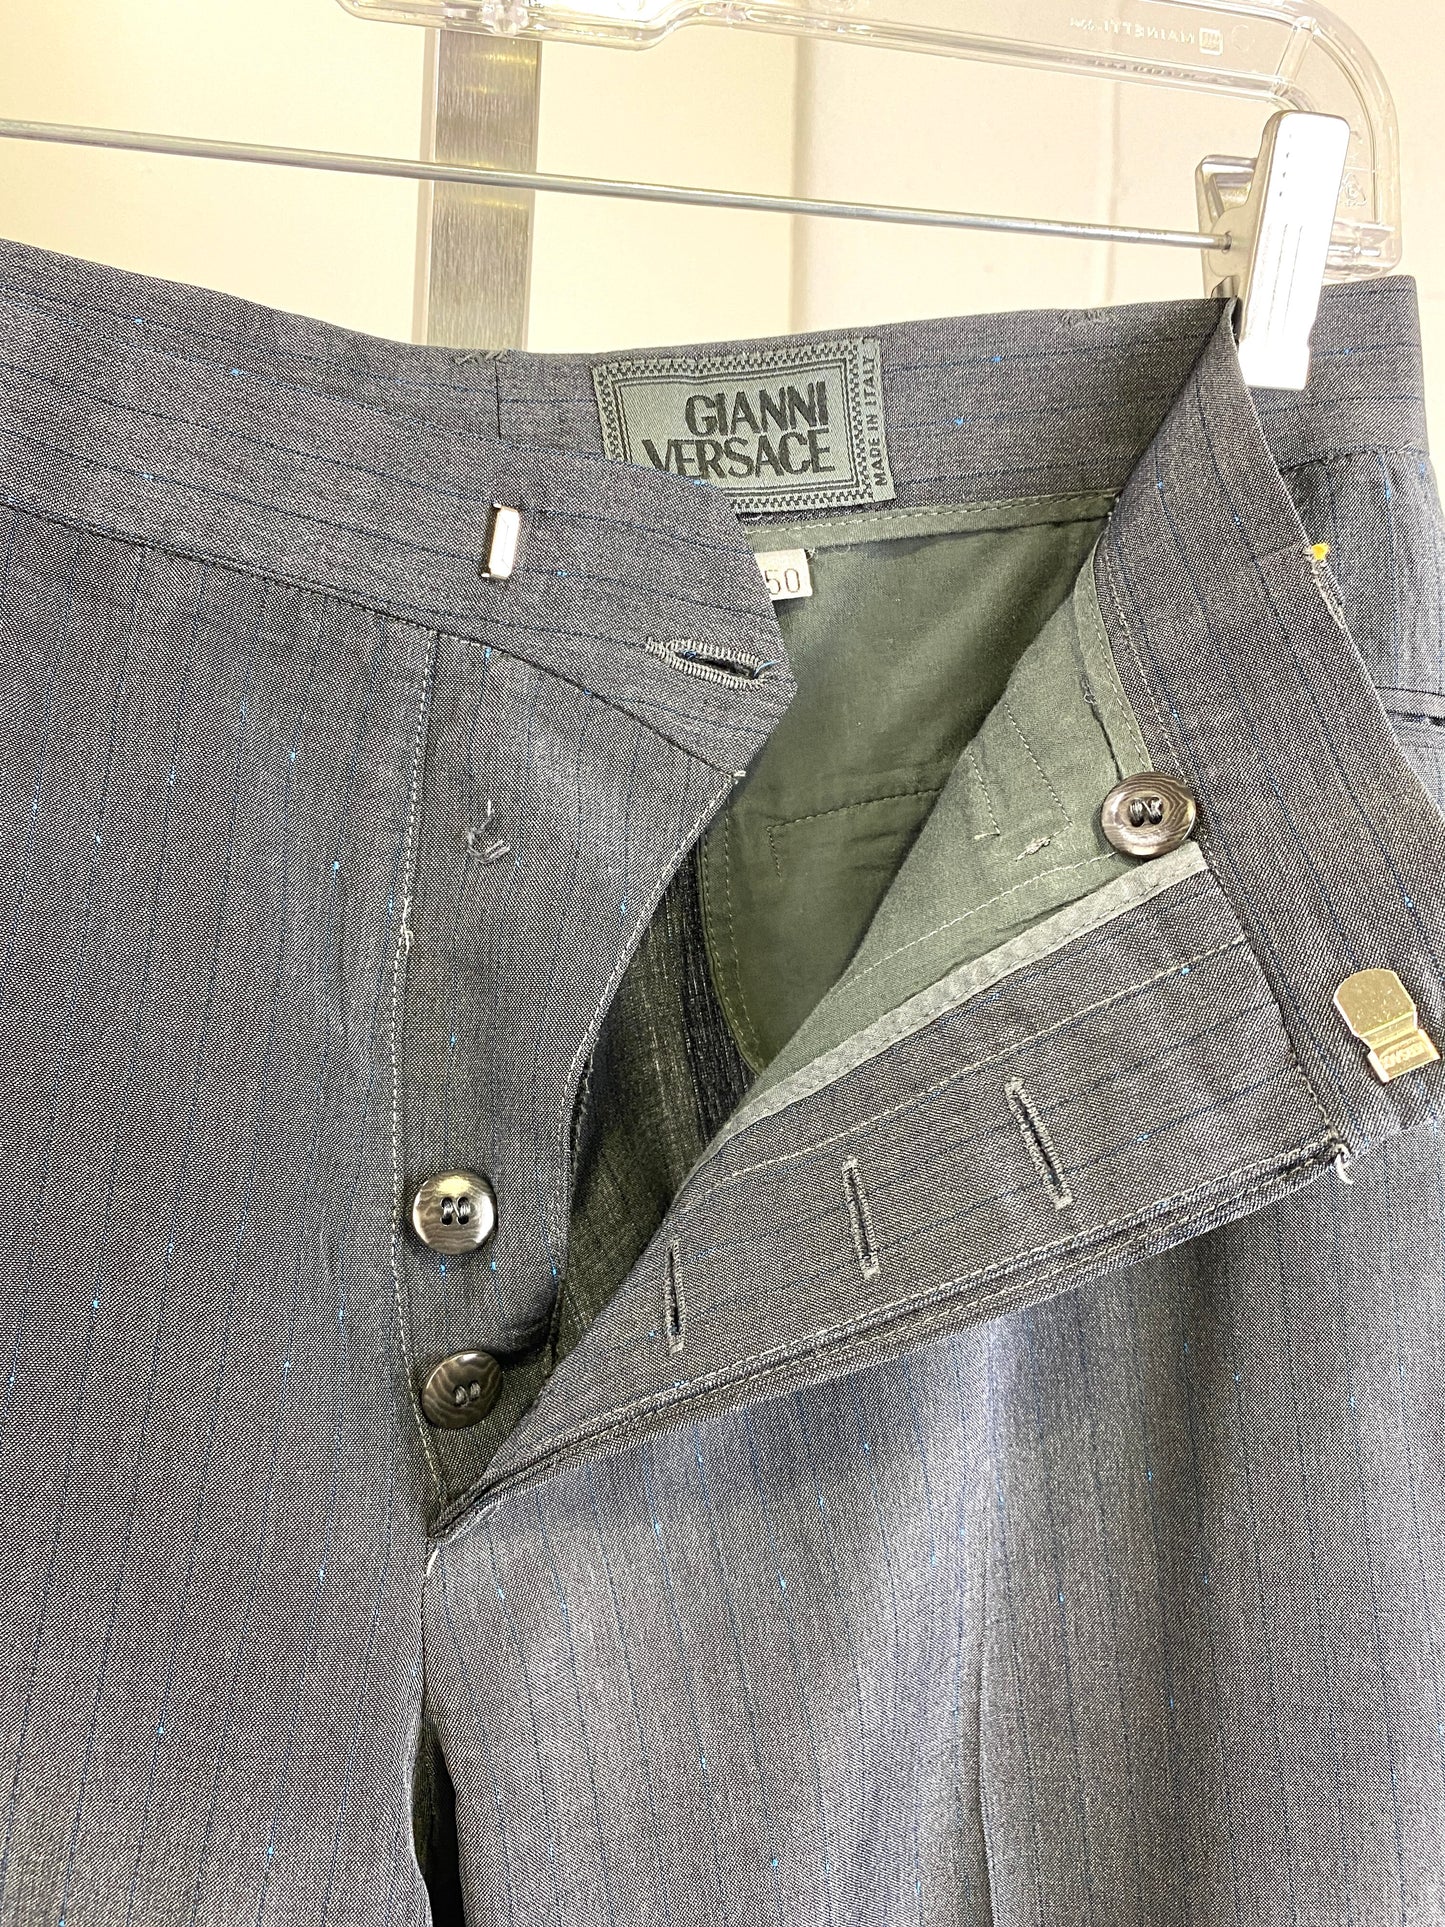 1990s Vintage Men's Suit, Grey Blue Pinstripe 2-Piece Suit, Sleeveless Vest Jacket, Gianni Versace, C38